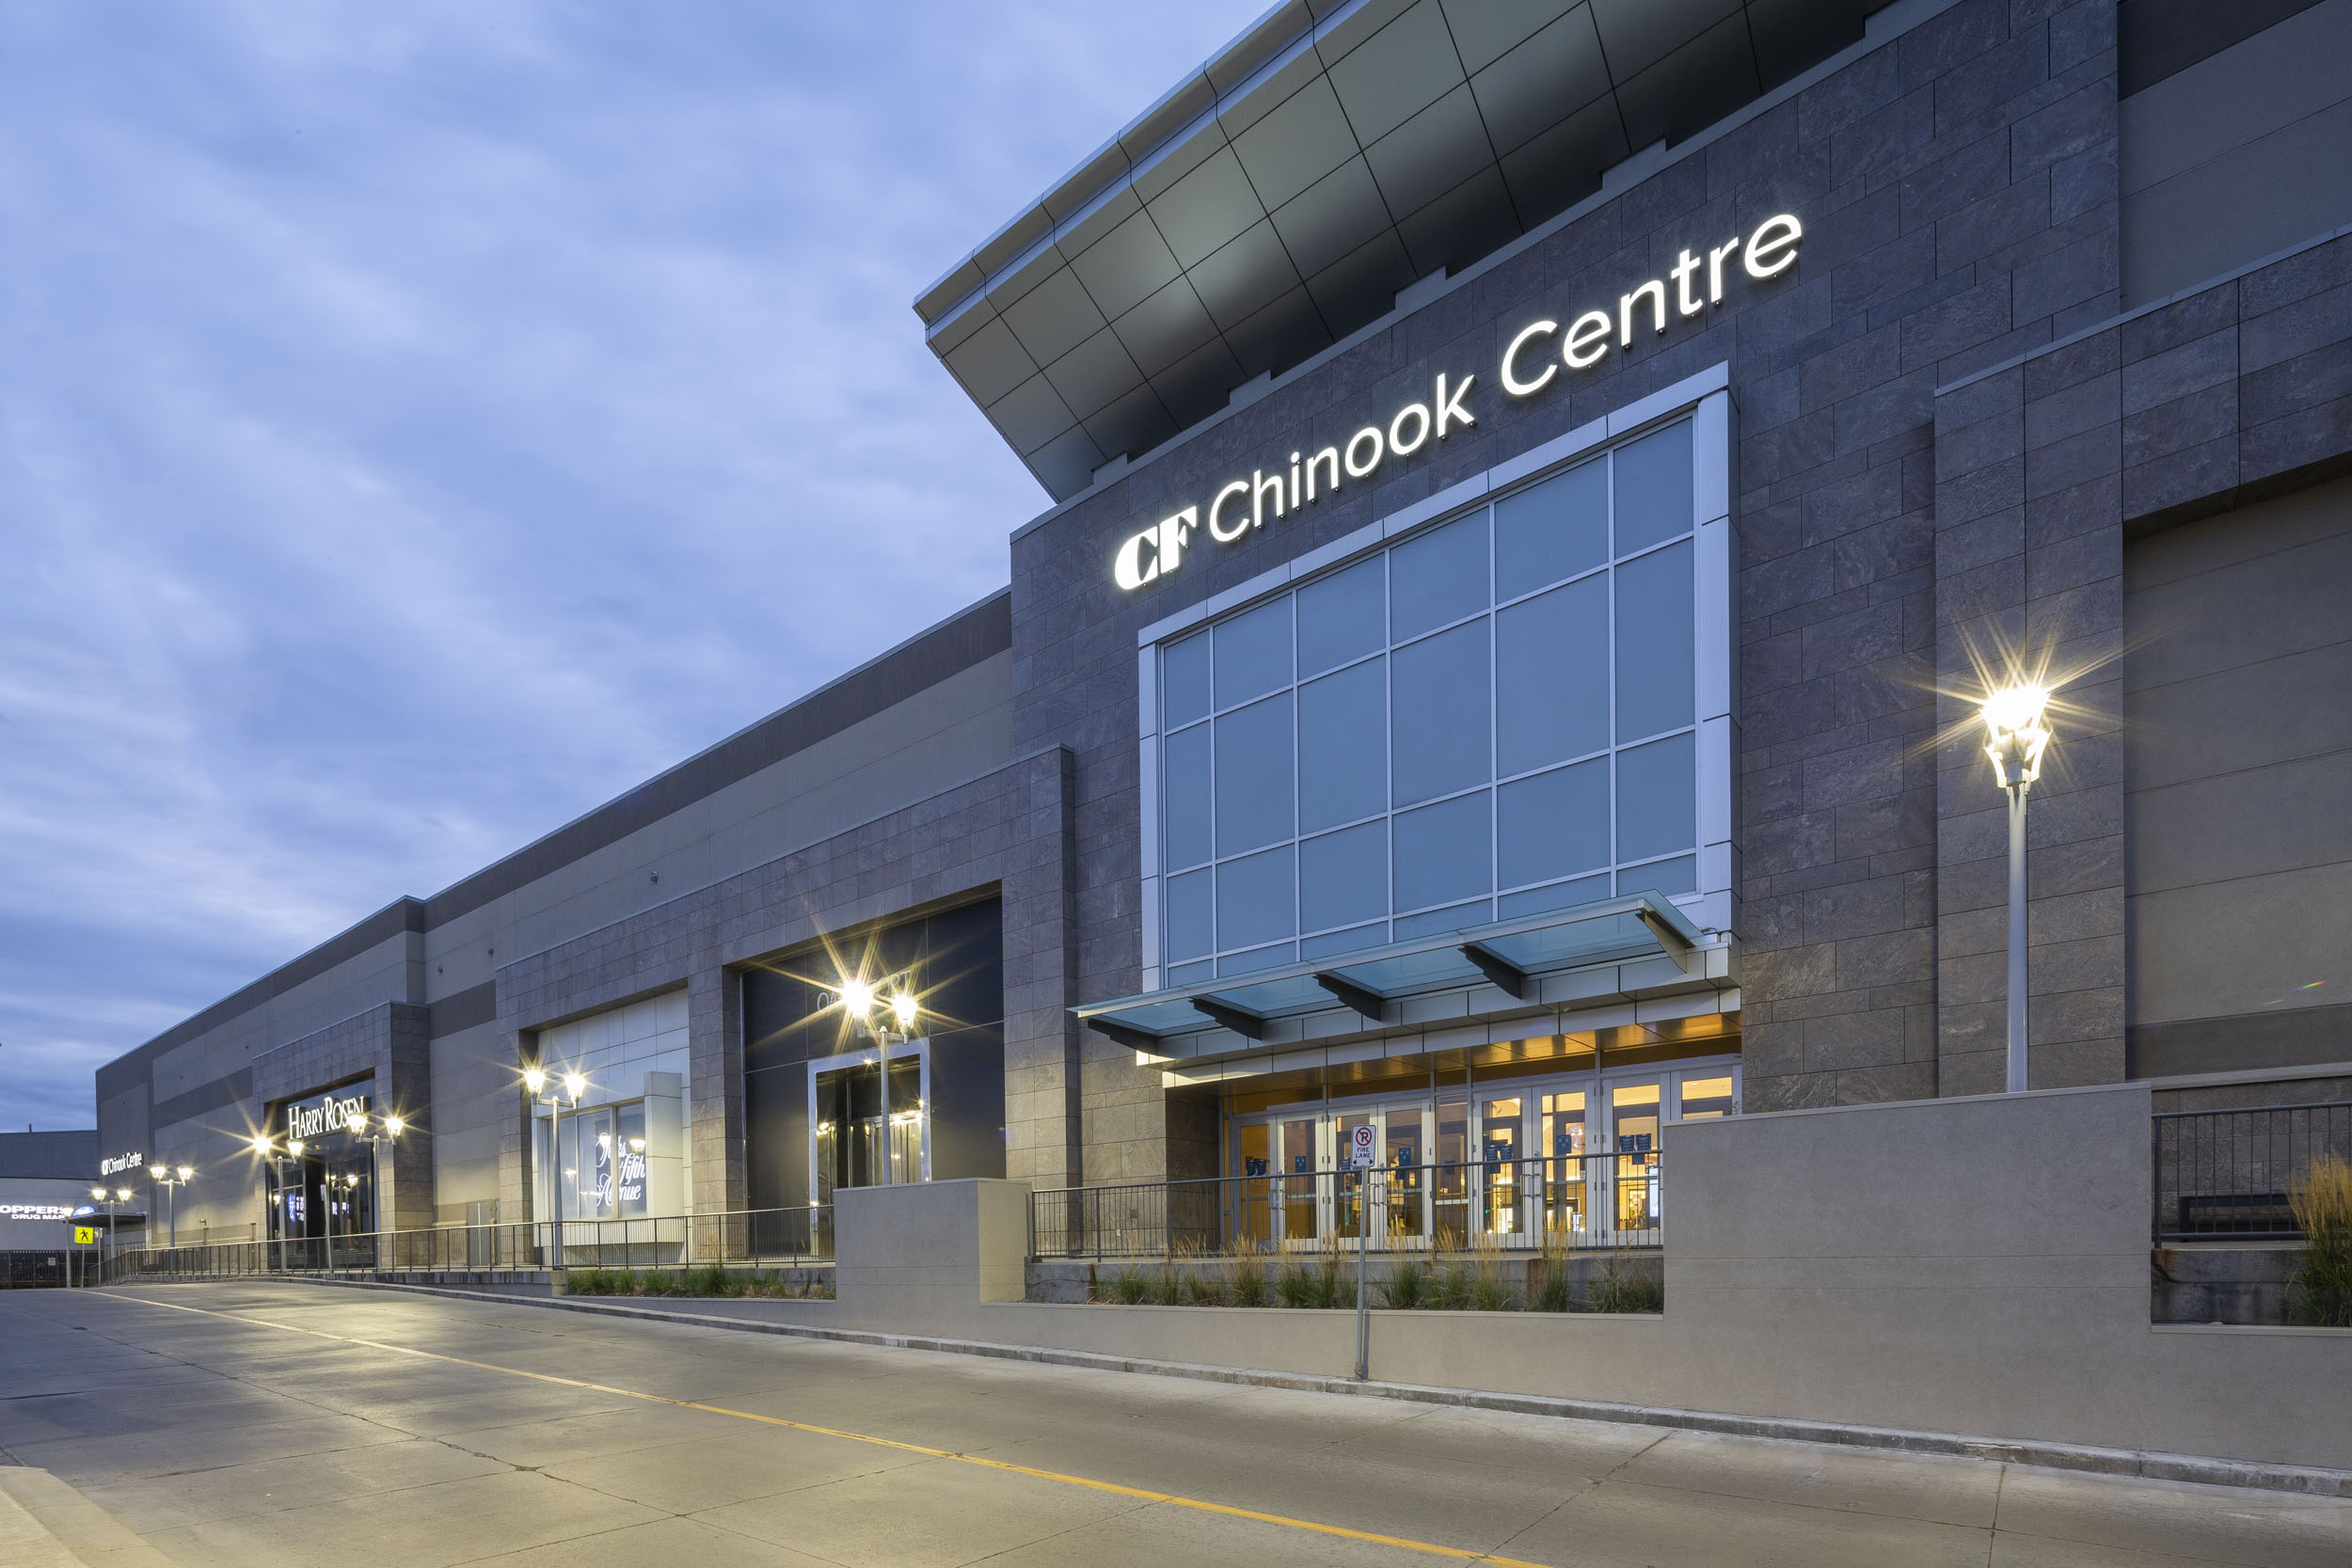 Louis Vuitton Calgary Chinook Centre - Southwest Calgary - Calgary, AB